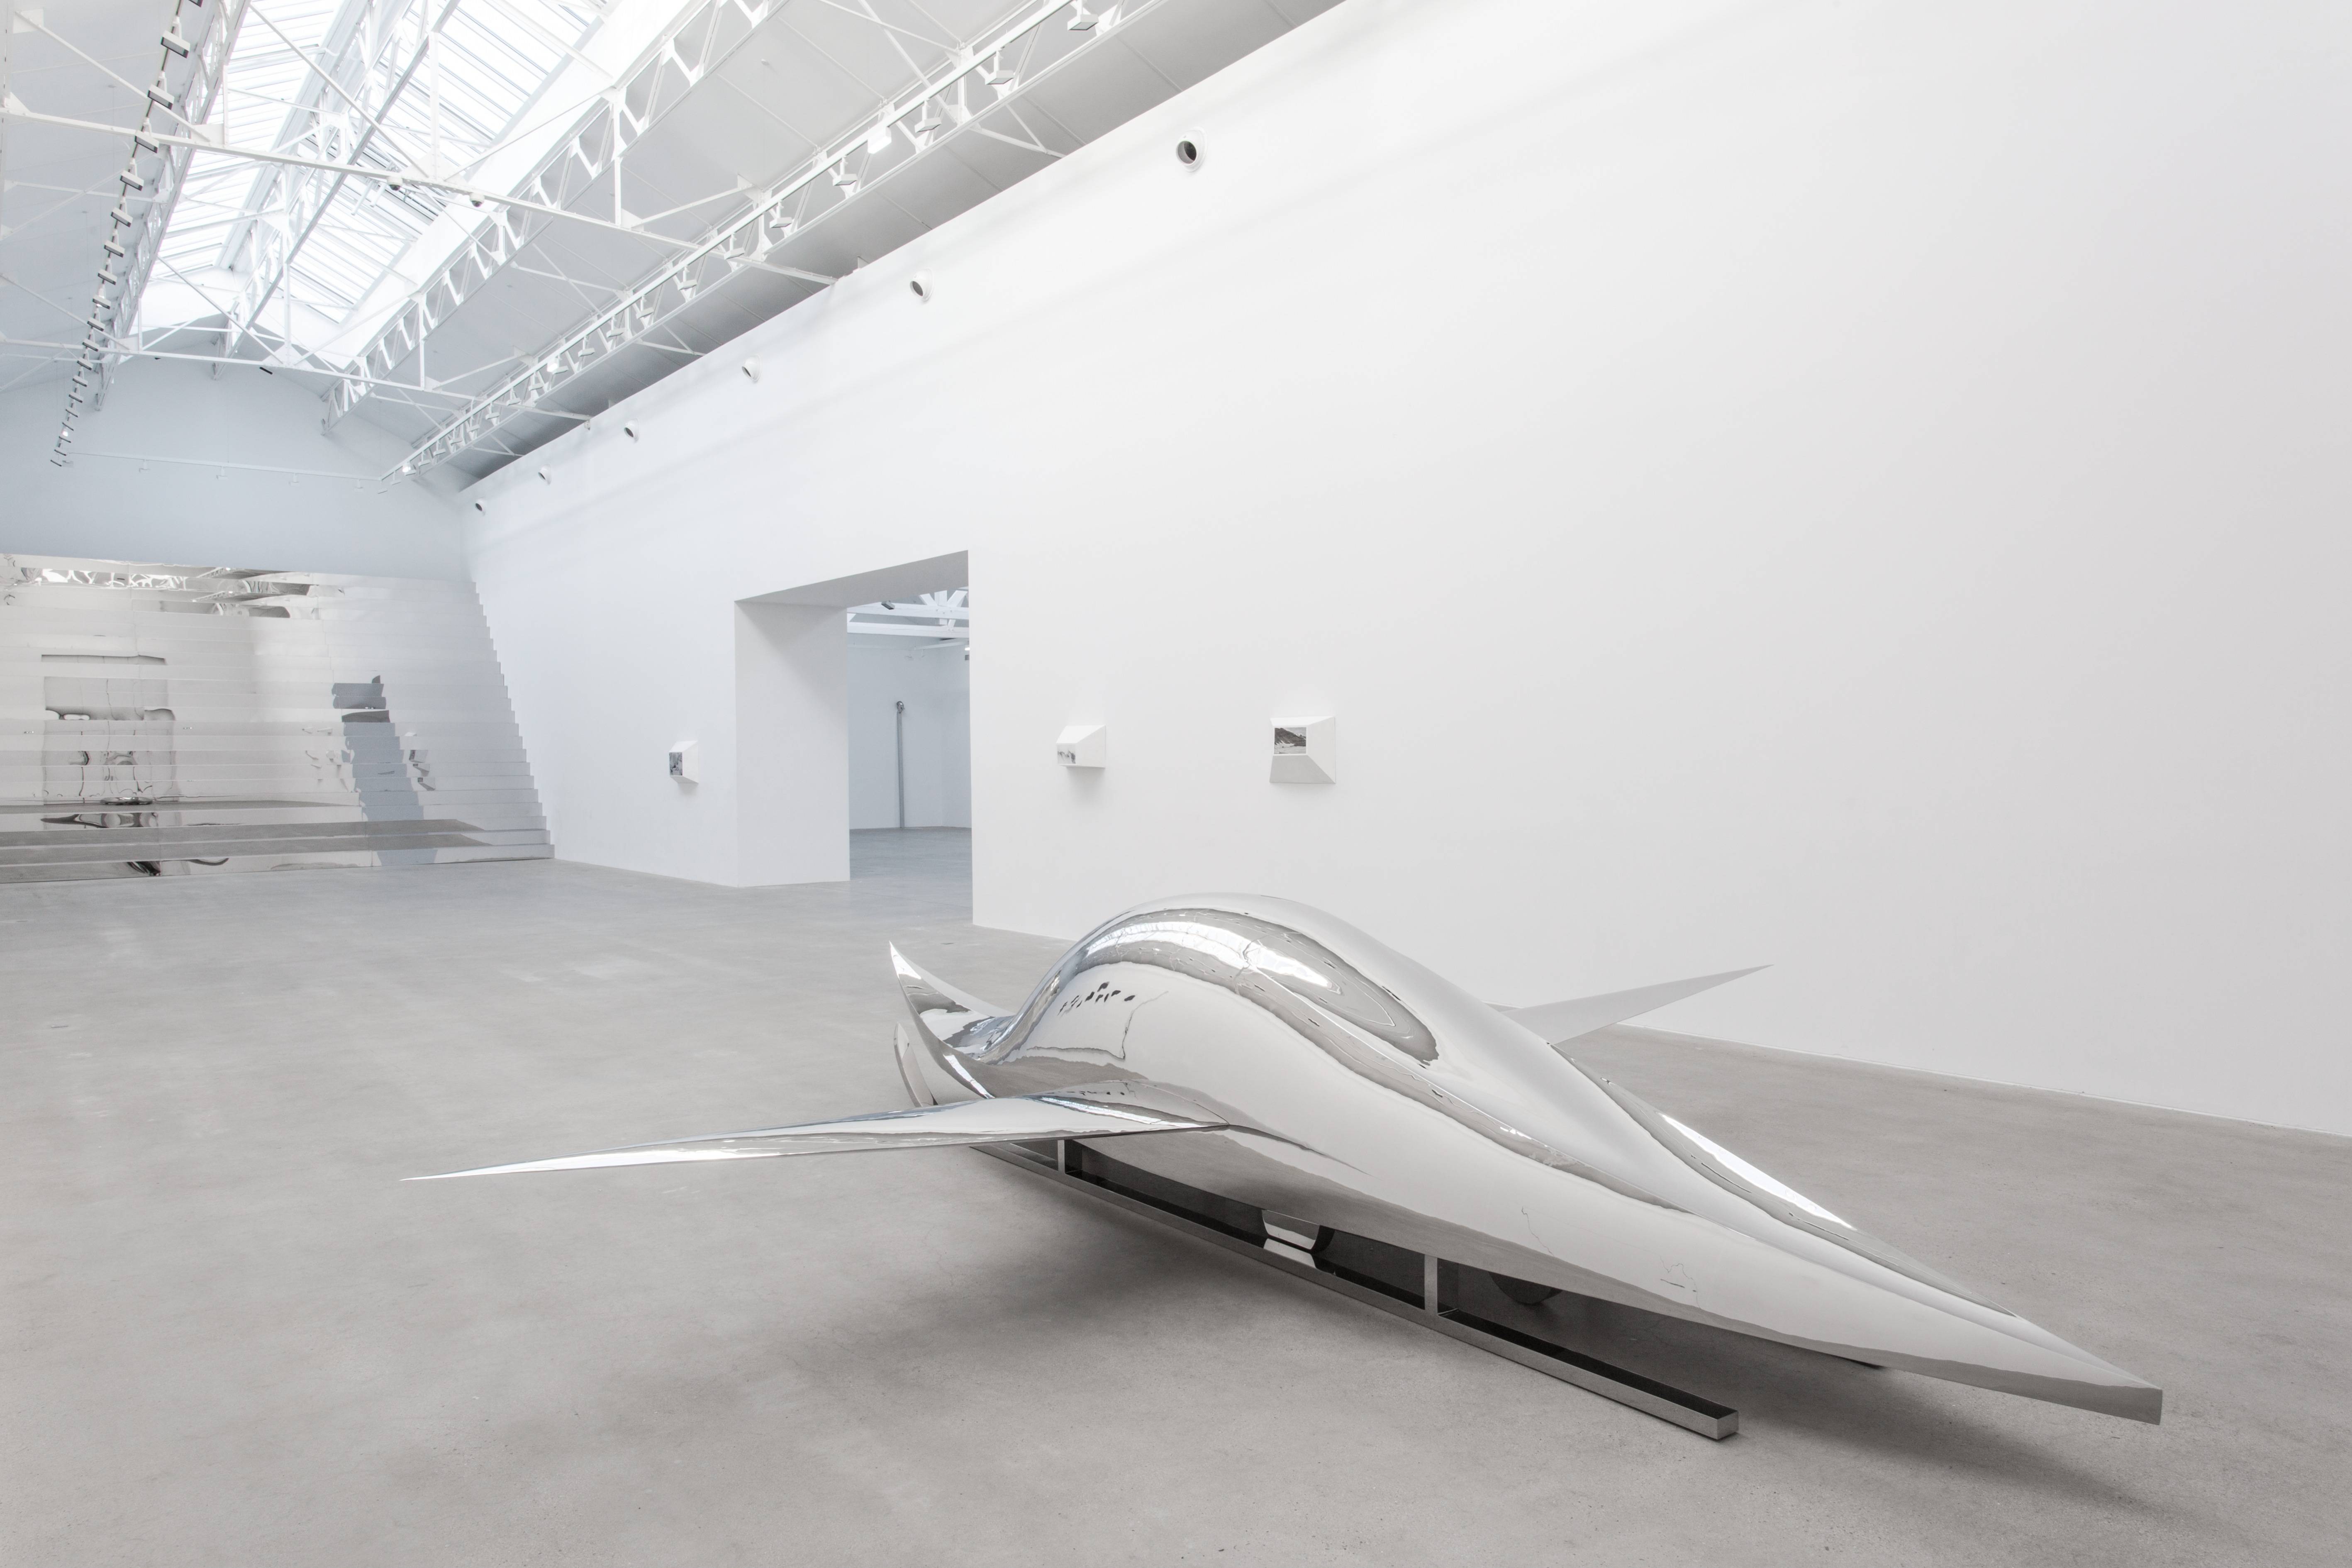 Vue de l’nstallation “A Plane, a Boat, a Car, a Sled” (2011) de Not Vital, acier chromé, 116 x 367 x 600 cm.